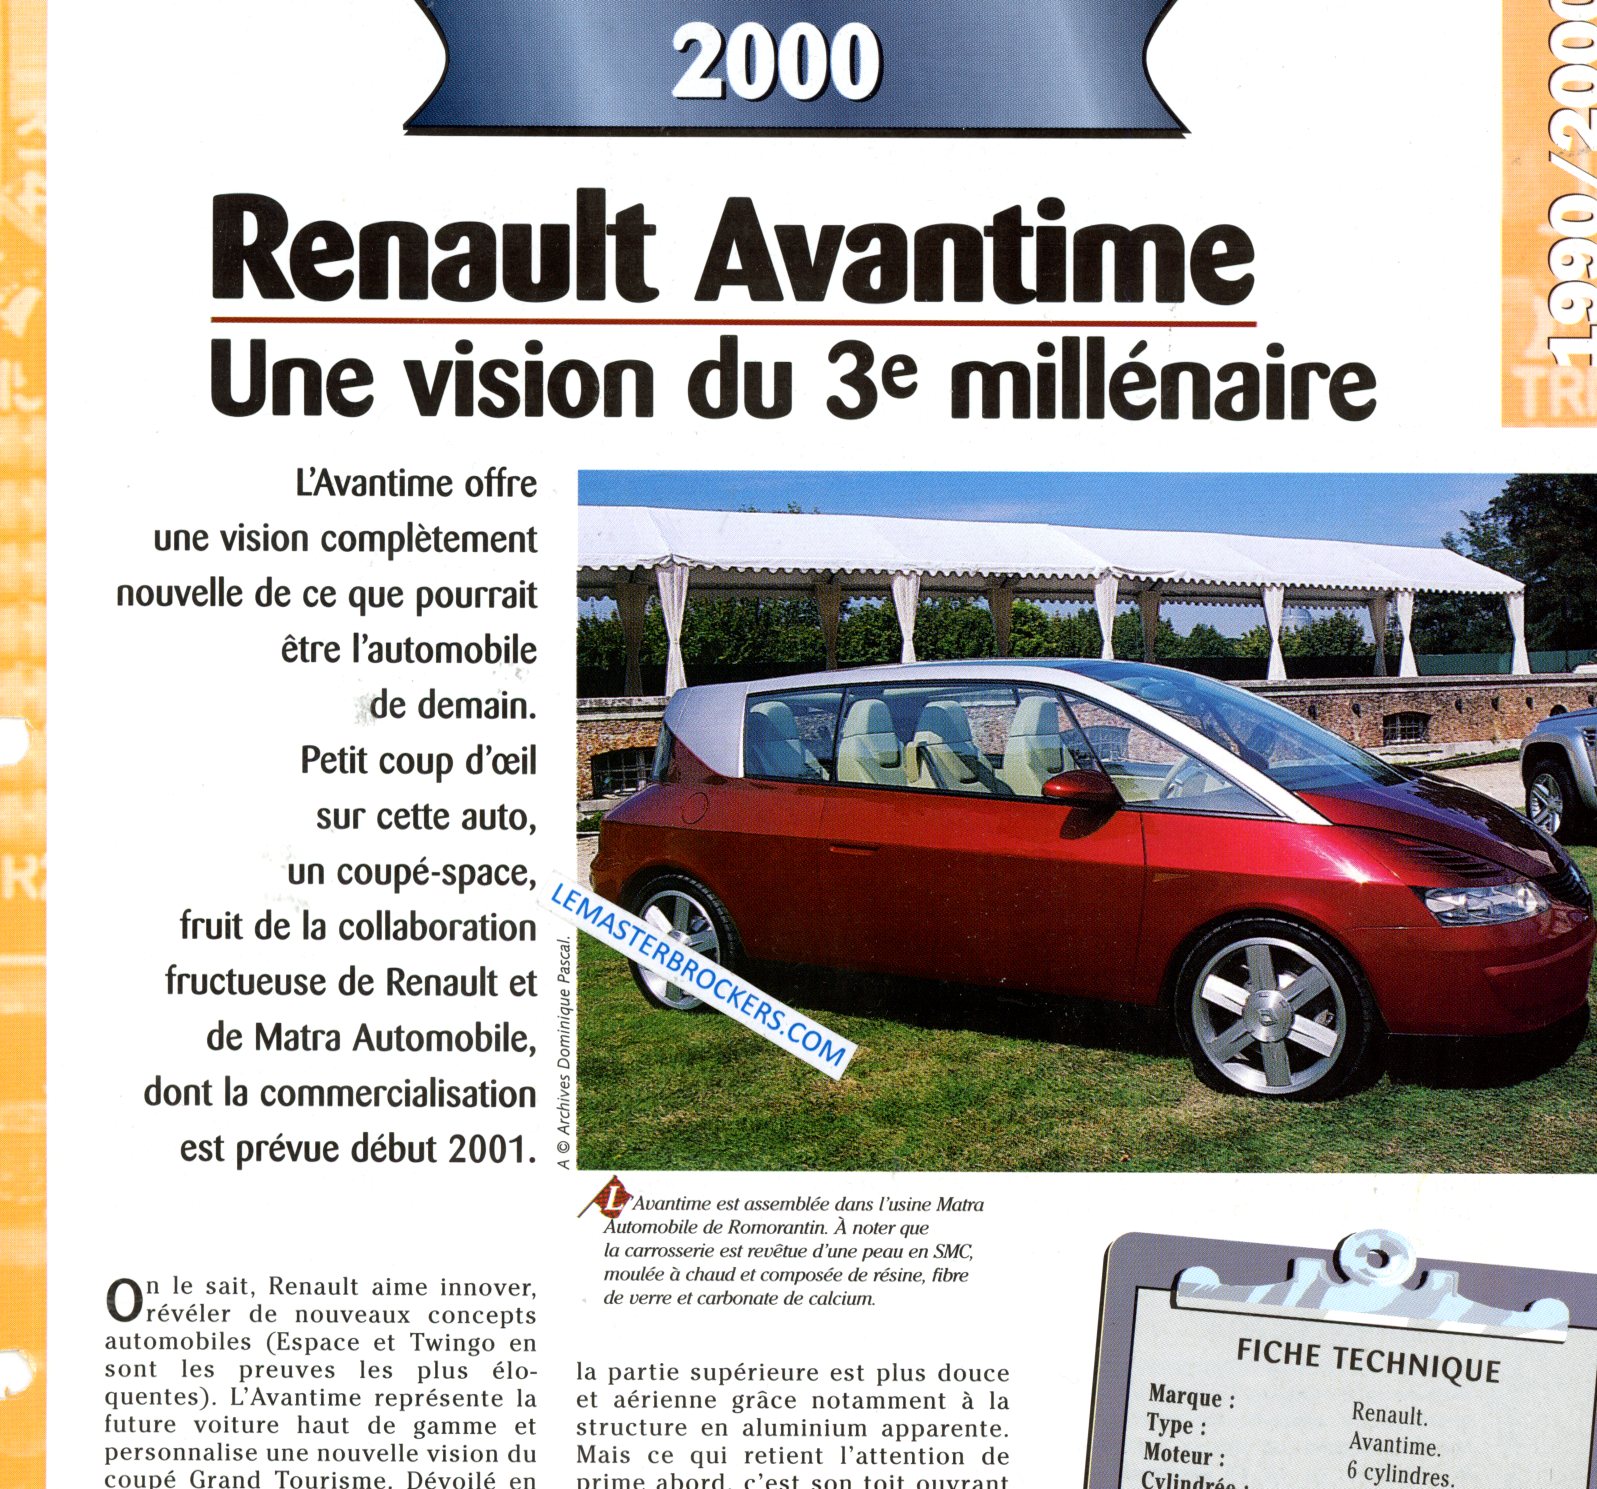 RENAULT AVANTIME 2000 FICHE TECHNIQUE